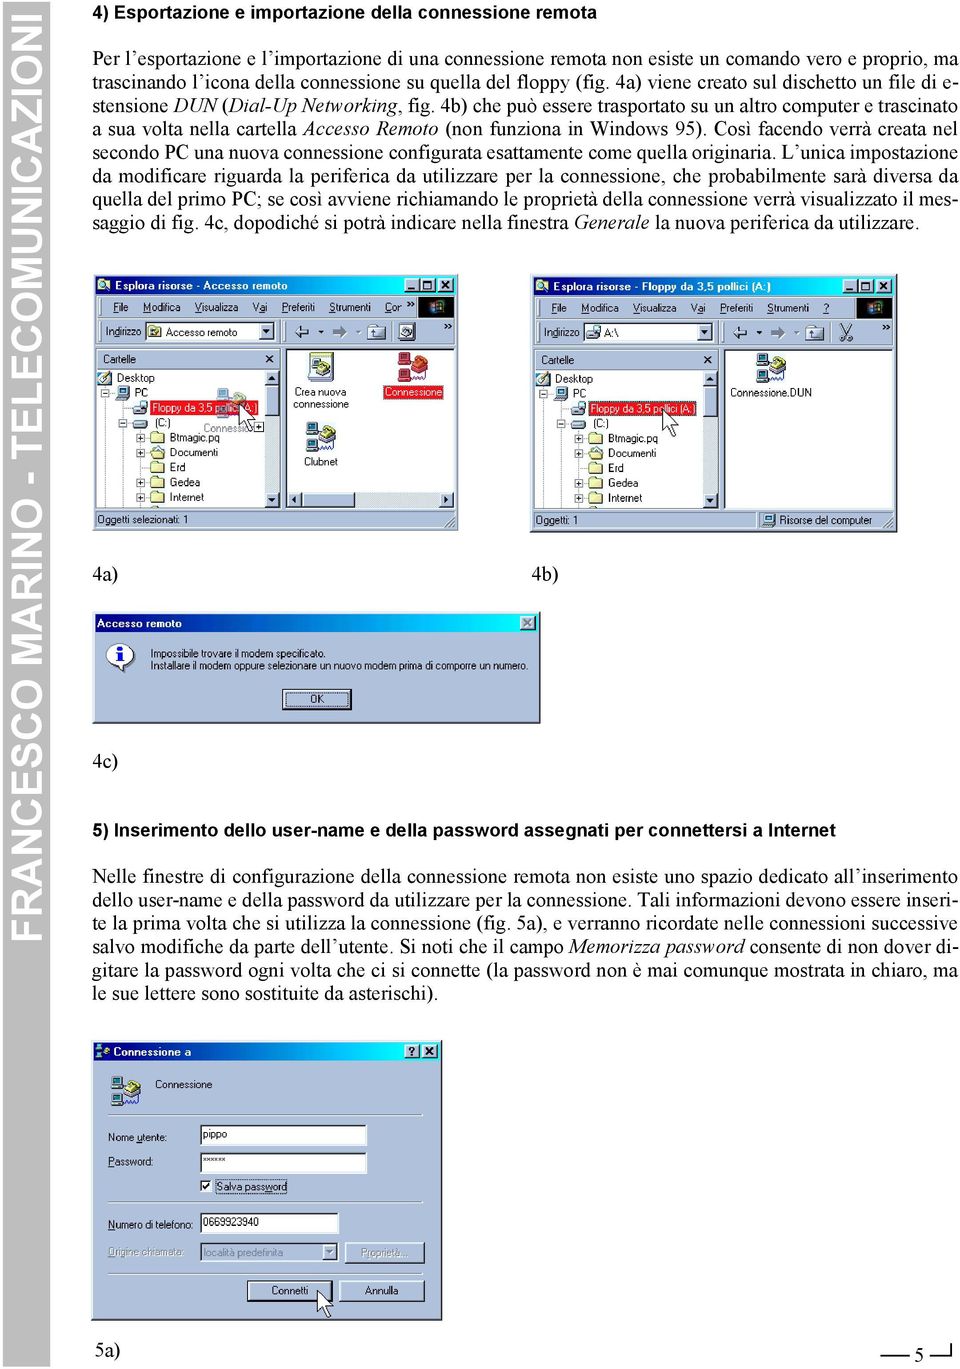 4b) che può essere trasportato su un altro computer e trascinato a sua volta nella cartella Accesso Remoto (non funziona in Windows 95).